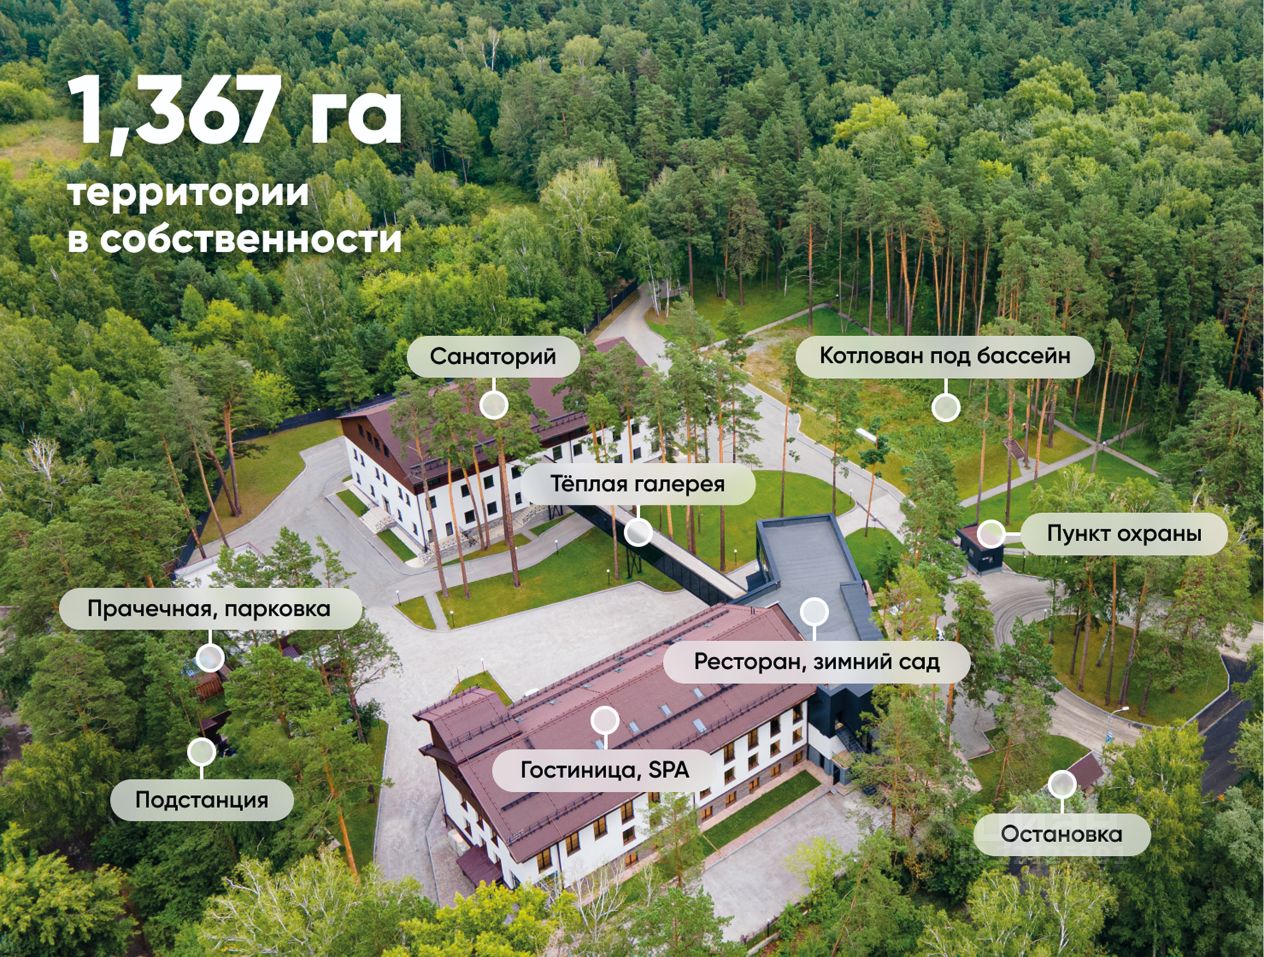 Санаторий у резиденций полпреда и губернатора продается в Новосибирске за 620 миллионов рублей